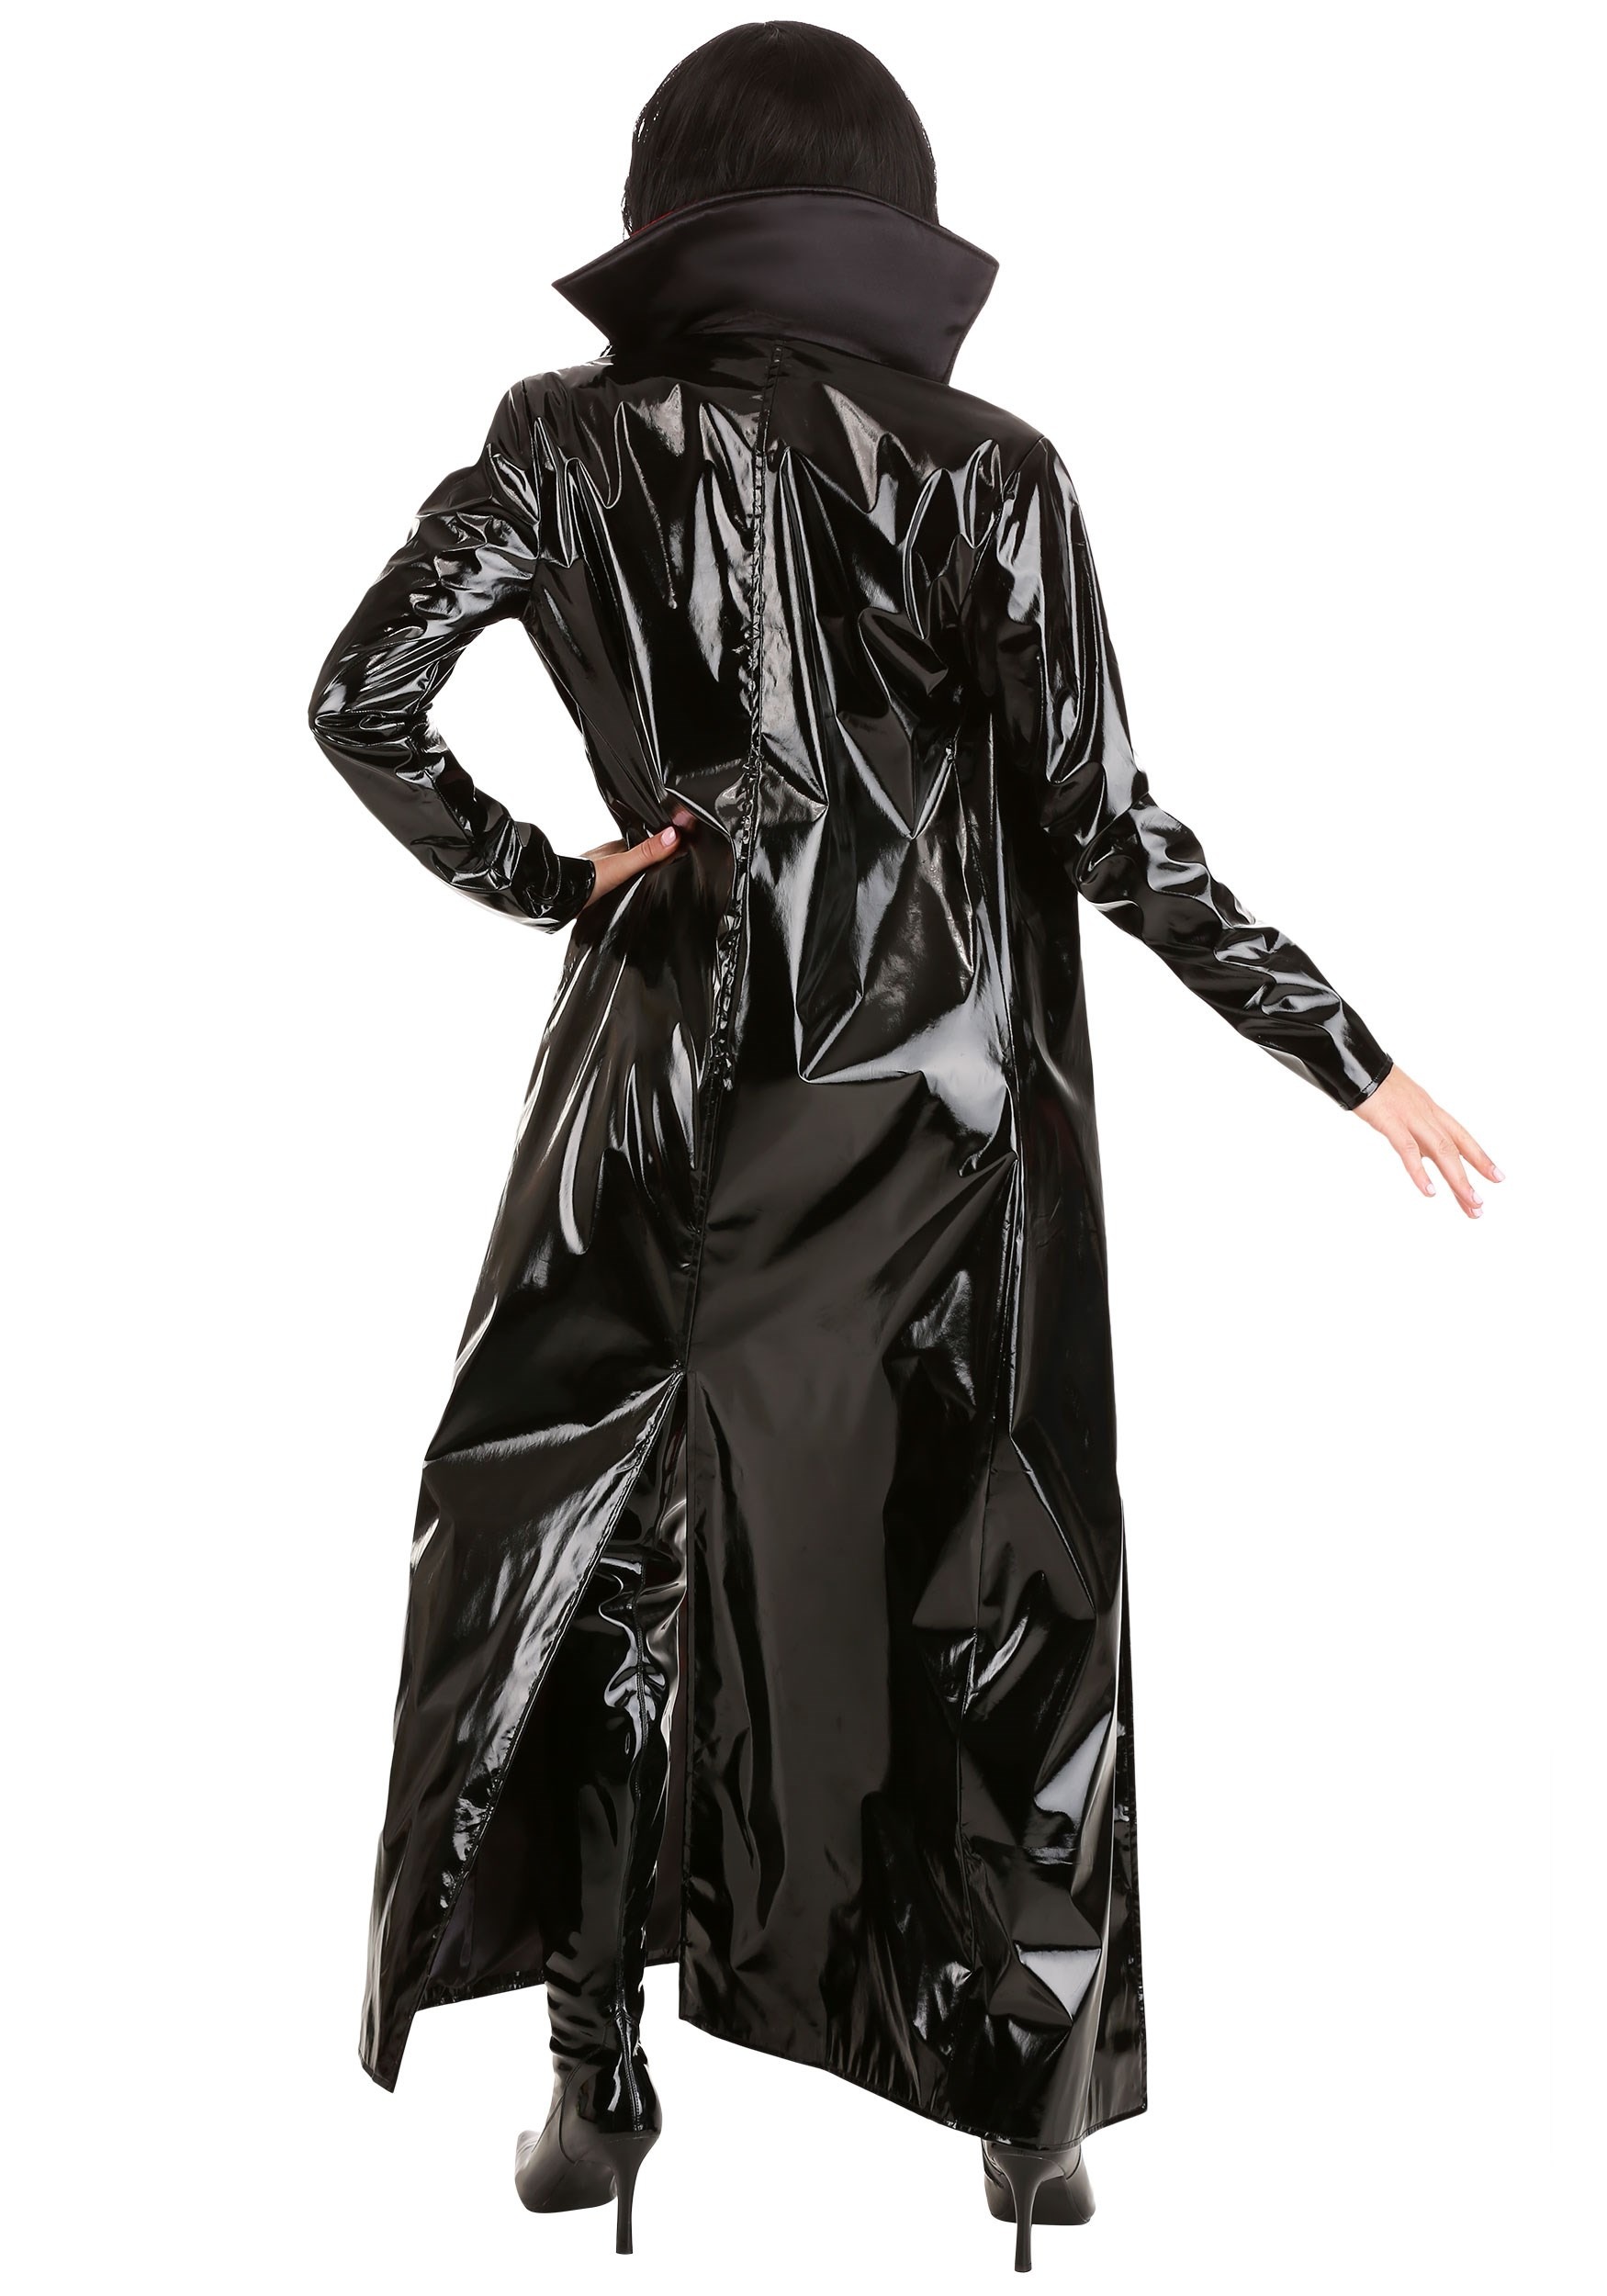 Goth Vampiress Fancy Dress Costume For Women